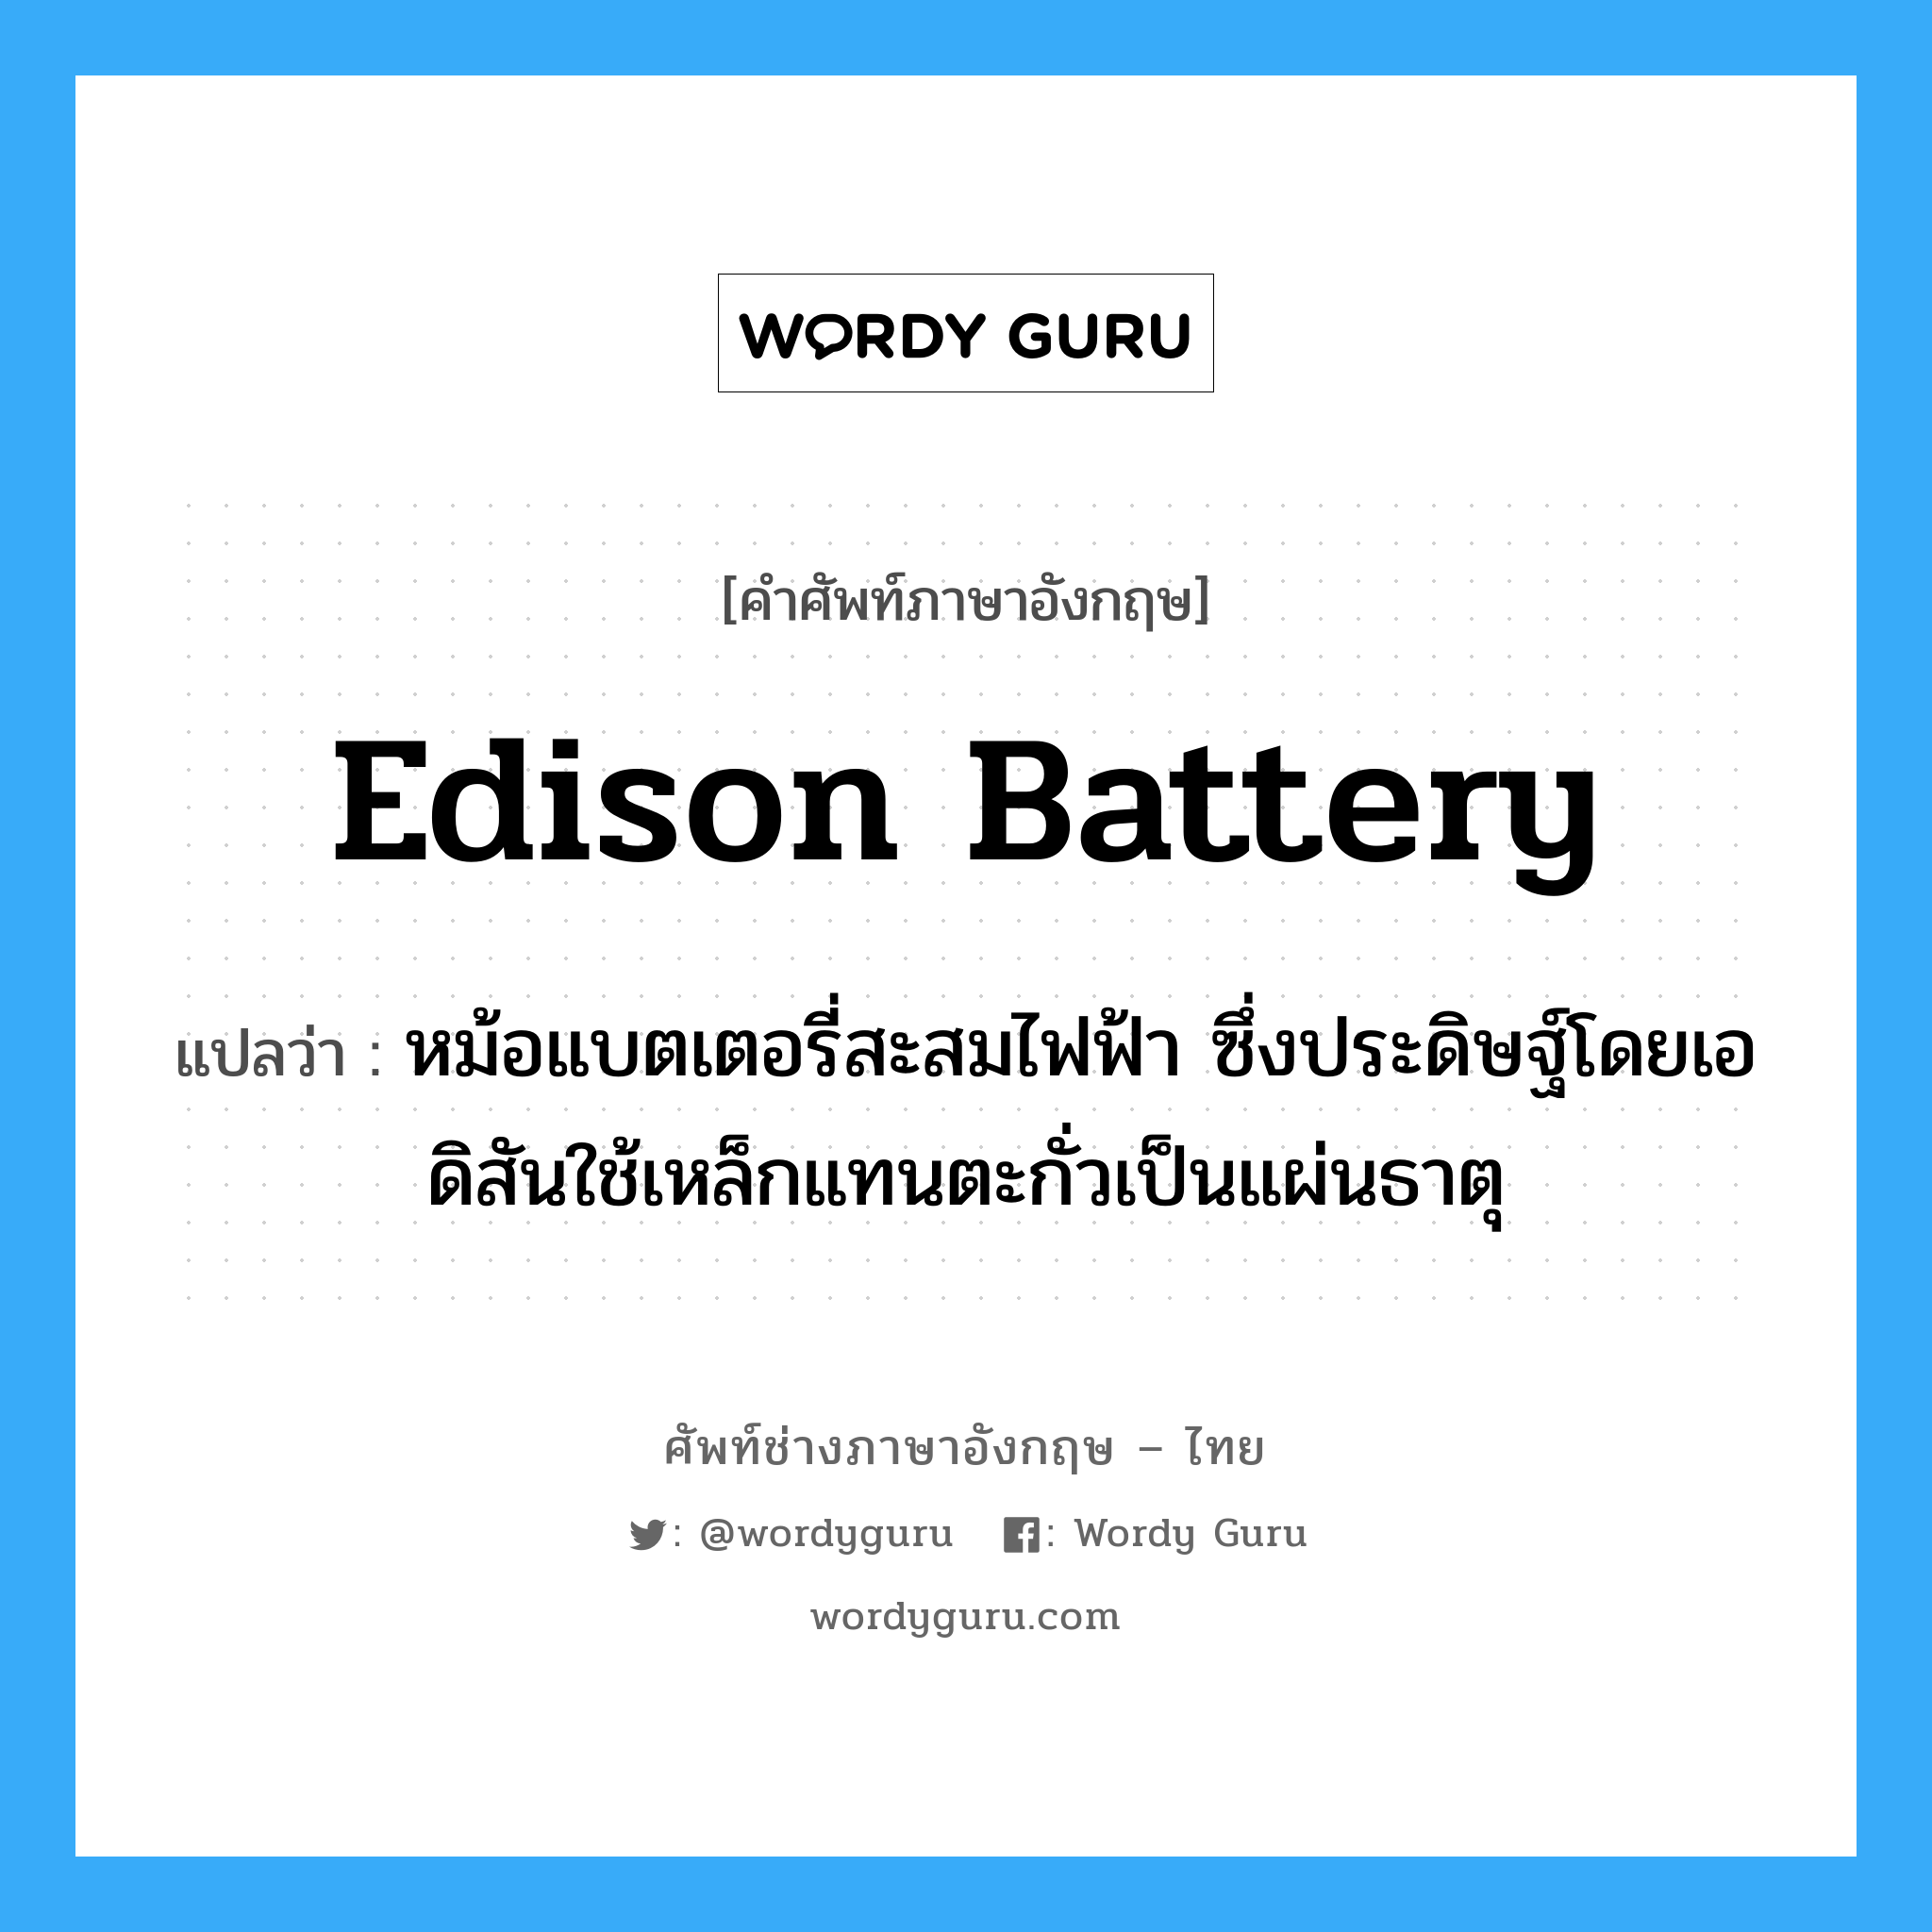 Edison battery แปลว่า?, คำศัพท์ช่างภาษาอังกฤษ - ไทย Edison battery คำศัพท์ภาษาอังกฤษ Edison battery แปลว่า หม้อแบตเตอรี่สะสมไฟฟ้า ซึ่งประดิษฐ์โดยเอดิสันใช้เหล็กแทนตะกั่วเป็นแผ่นธาตุ